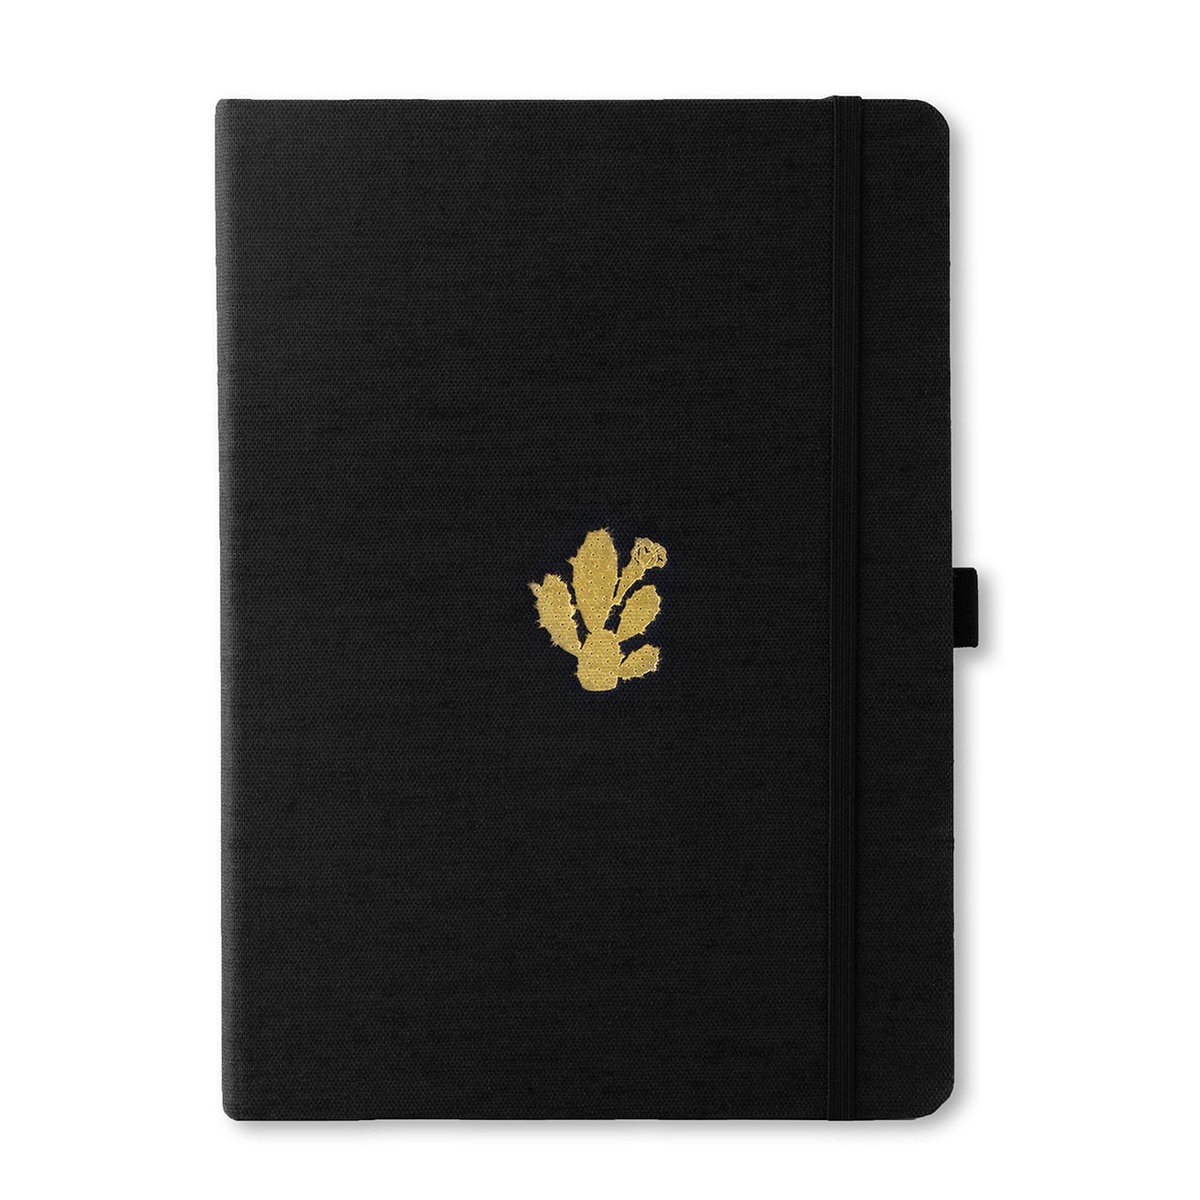 Dingbats* Pro B5 Notitieboek - Black Cactus Stippen - Bullet Journal met 160gsm Inktvrij Papier - Schetsboek met Harde Kaft, Binnenvak, Elastische Sluiting en Bladwijzer